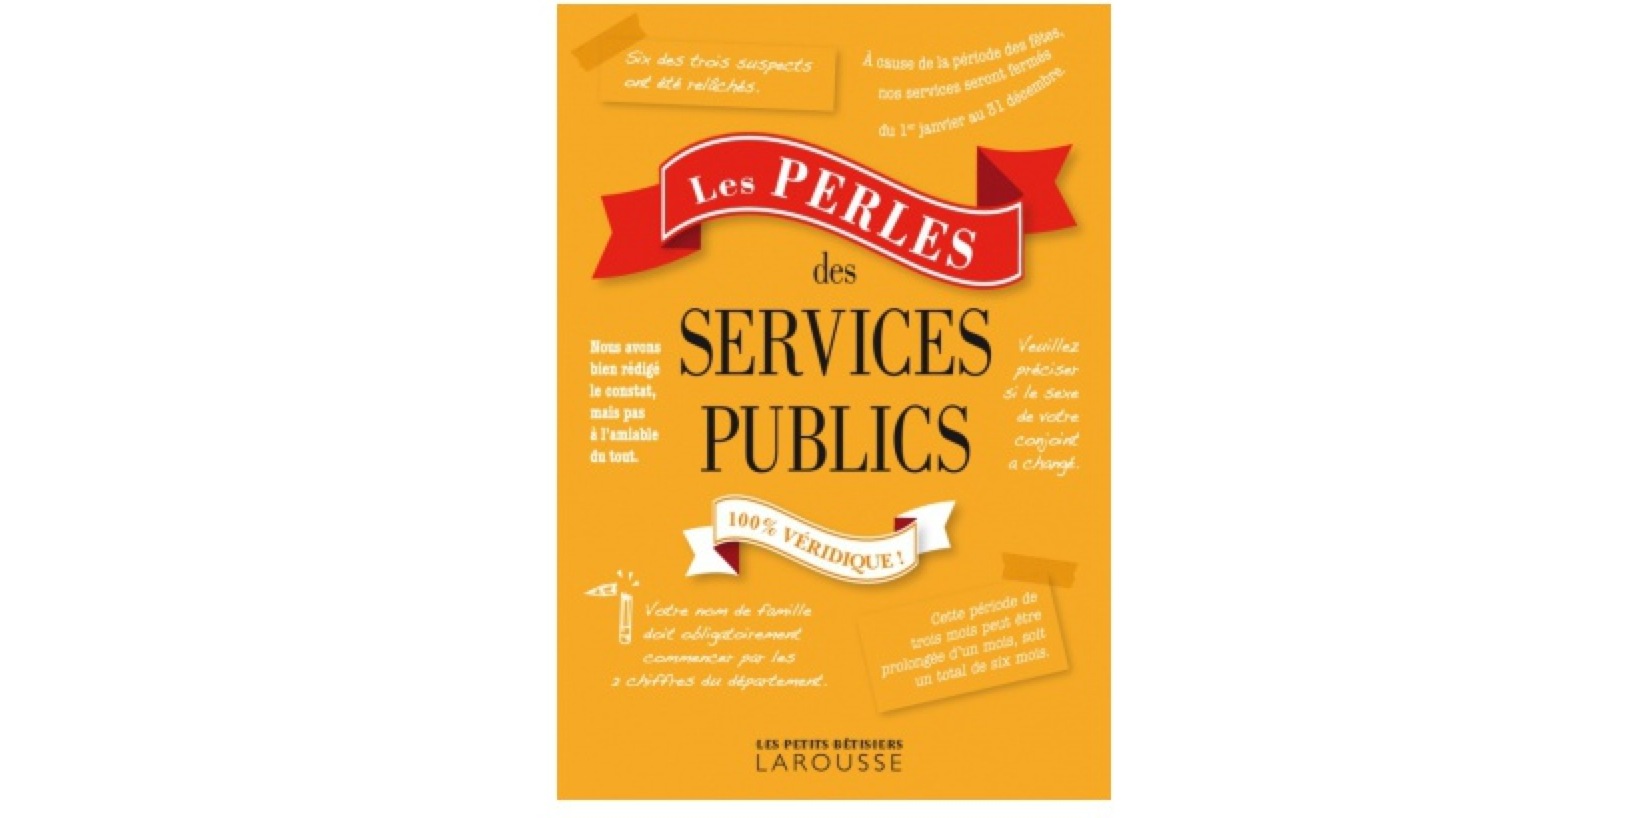 Livre Perles services publics